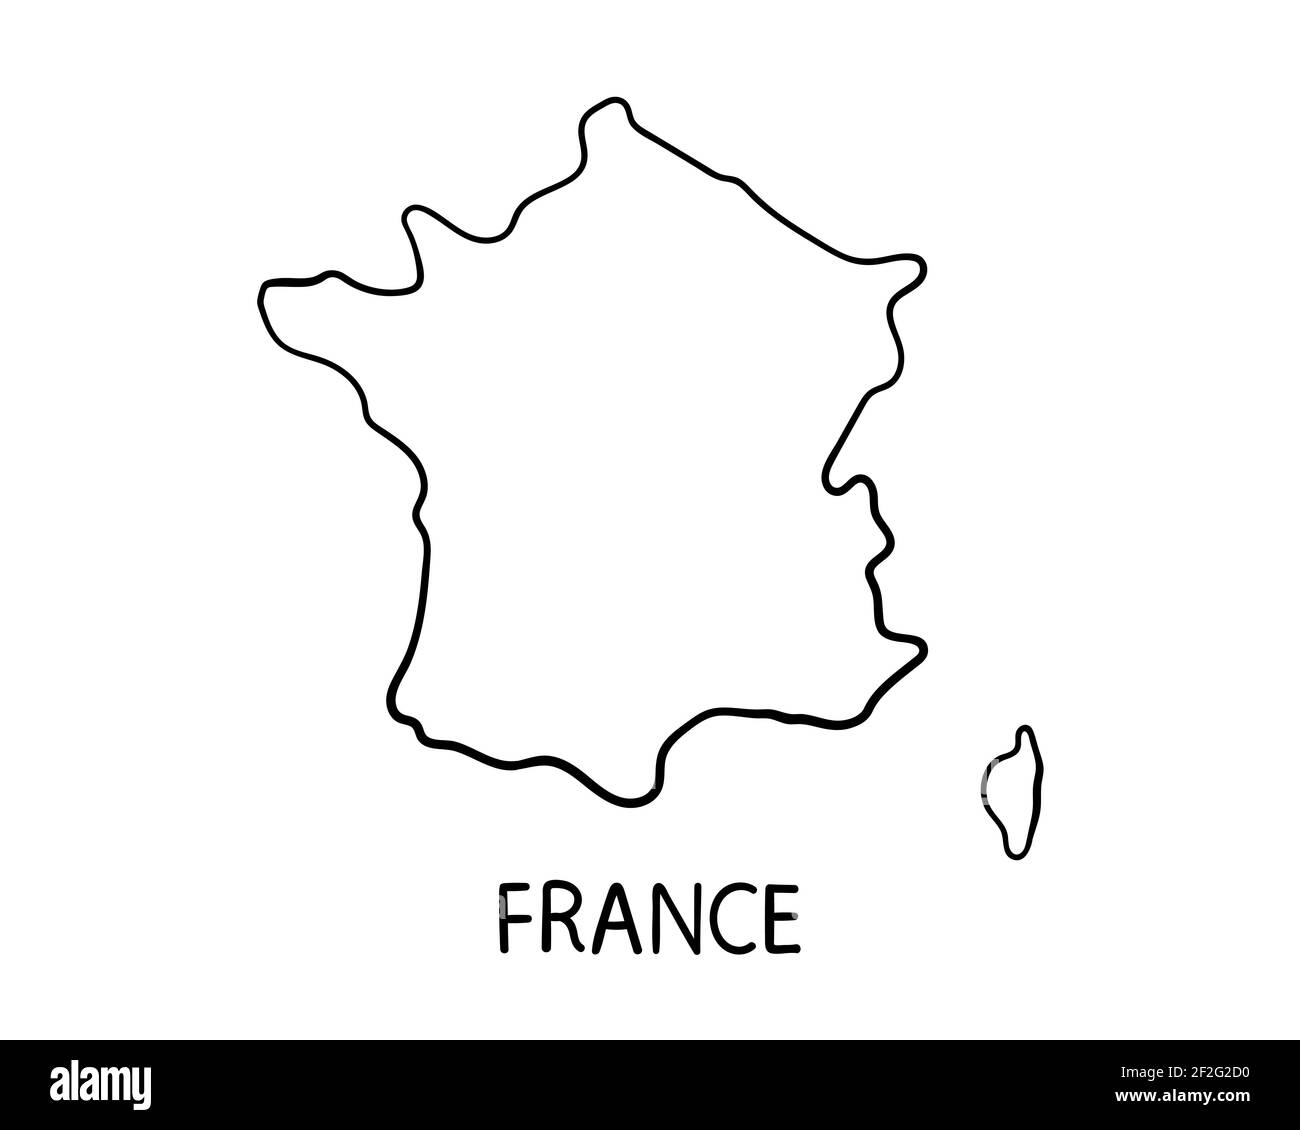 Mapa de Francia - Ilustración a mano Foto de stock